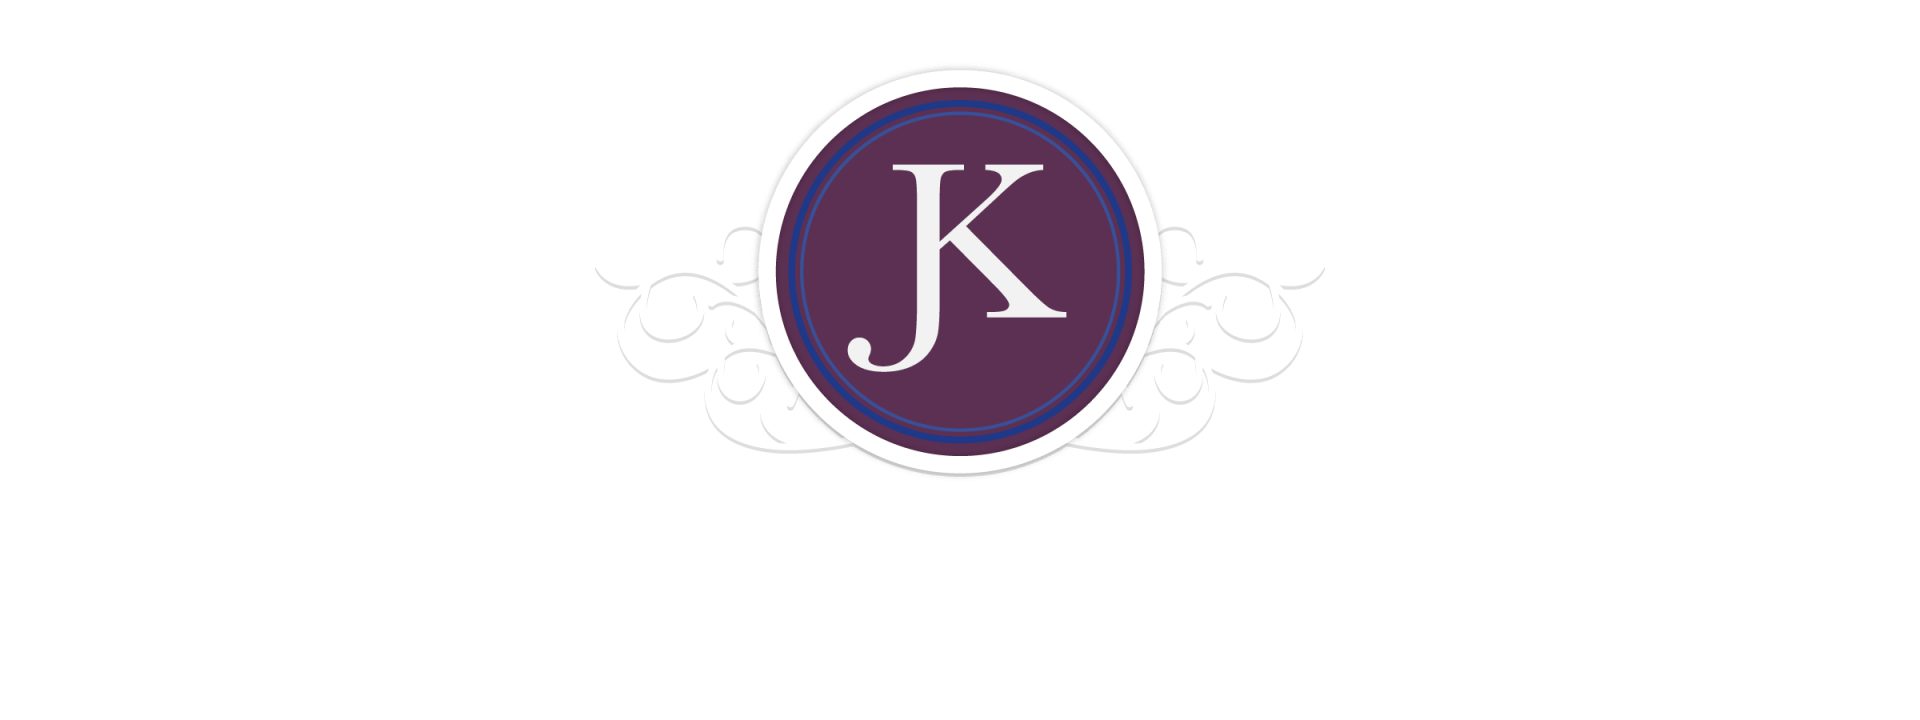 Kuettner Legal